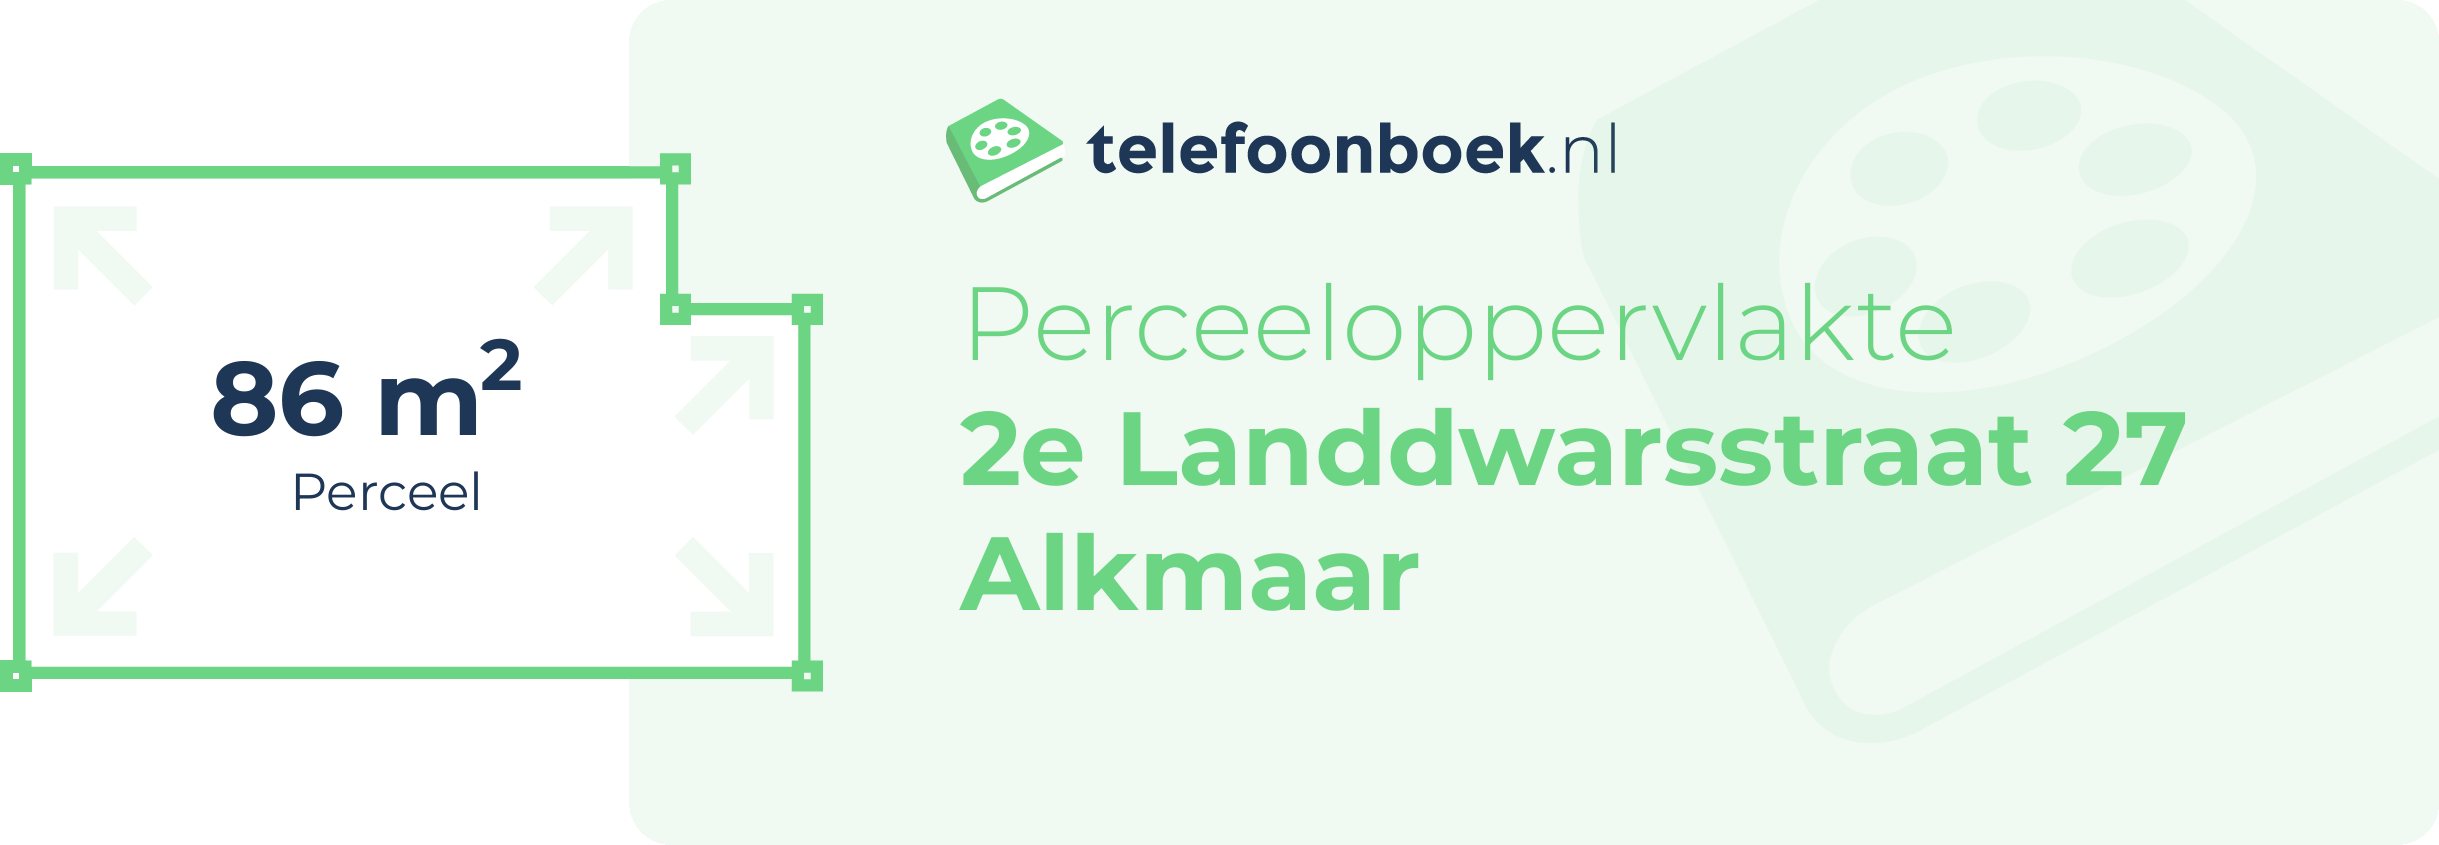 Perceeloppervlakte 2e Landdwarsstraat 27 Alkmaar